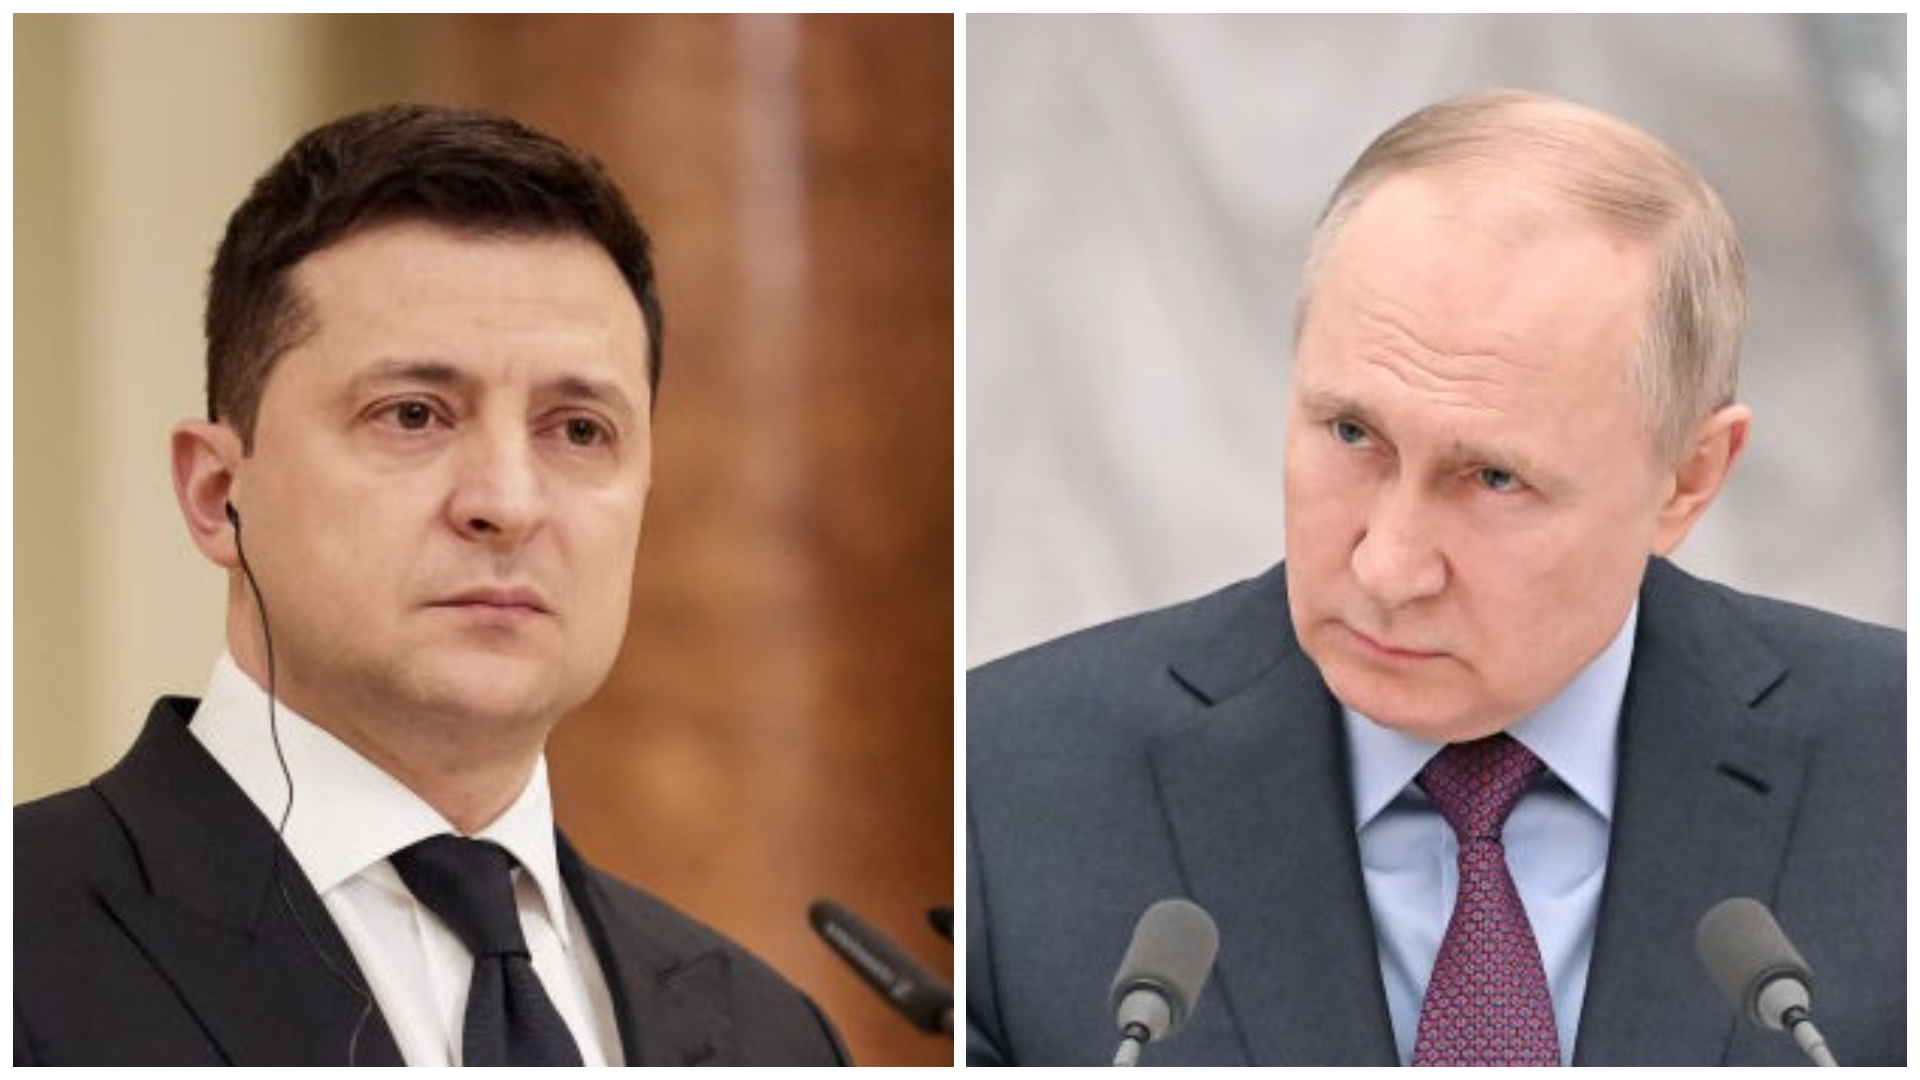 Schimbările de atitudine ale lui Vladimir Putin și Volodimir Zelenski trezesc speranțe pentru încetarea focului în Ucraina